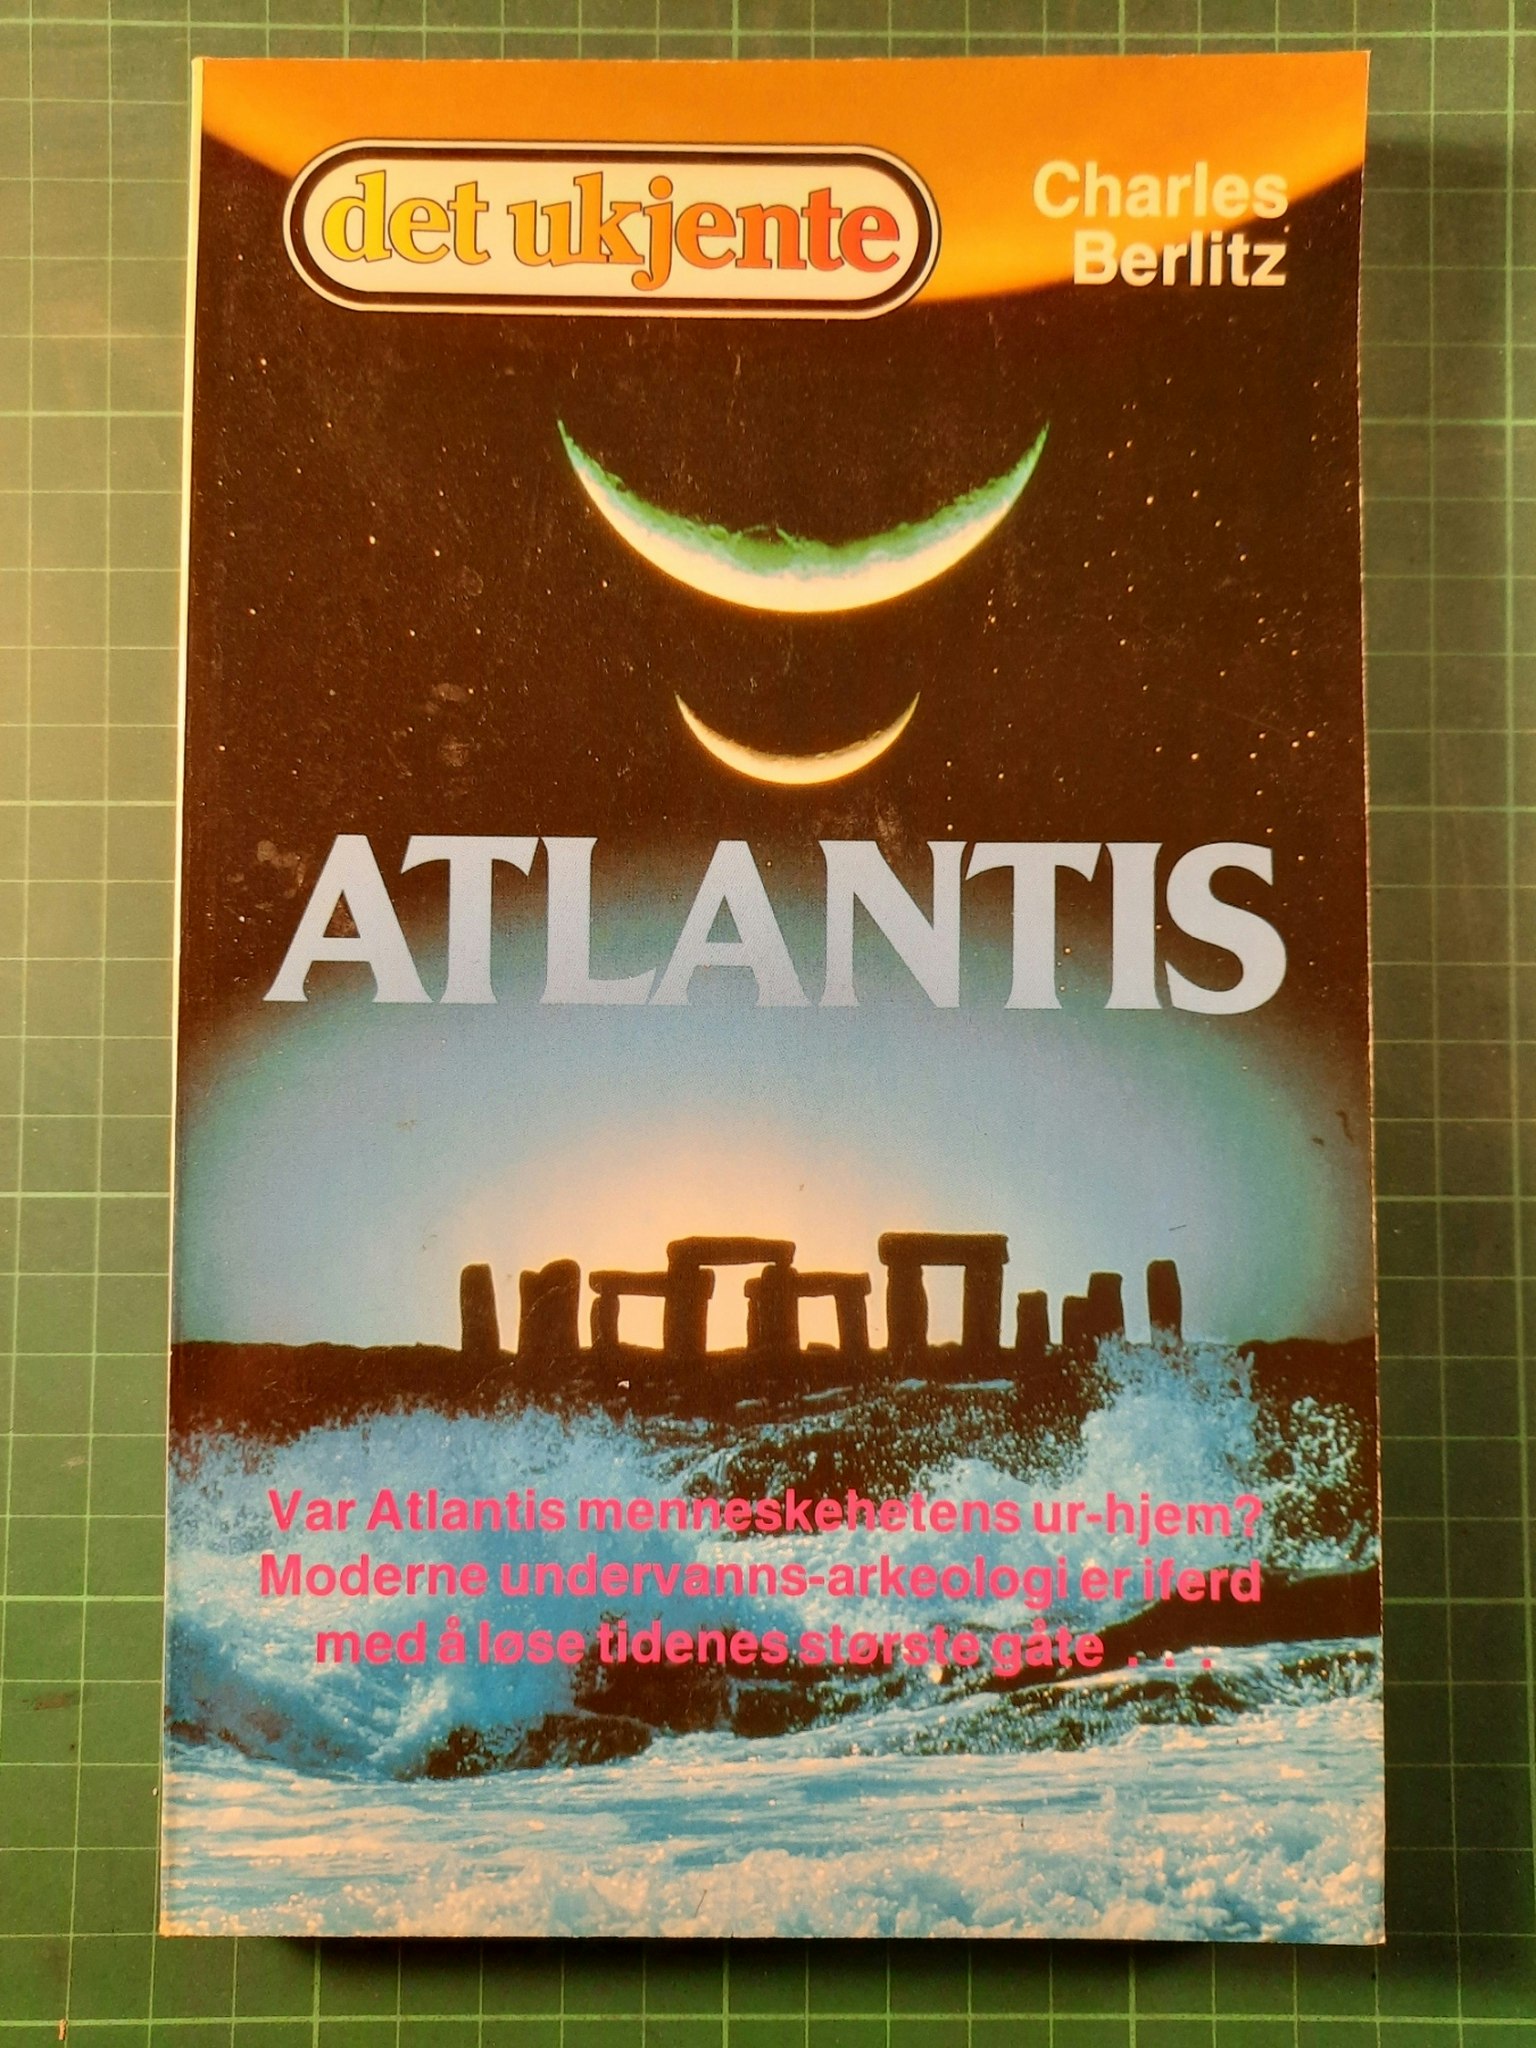 Atlantis (Det ukjente serien)